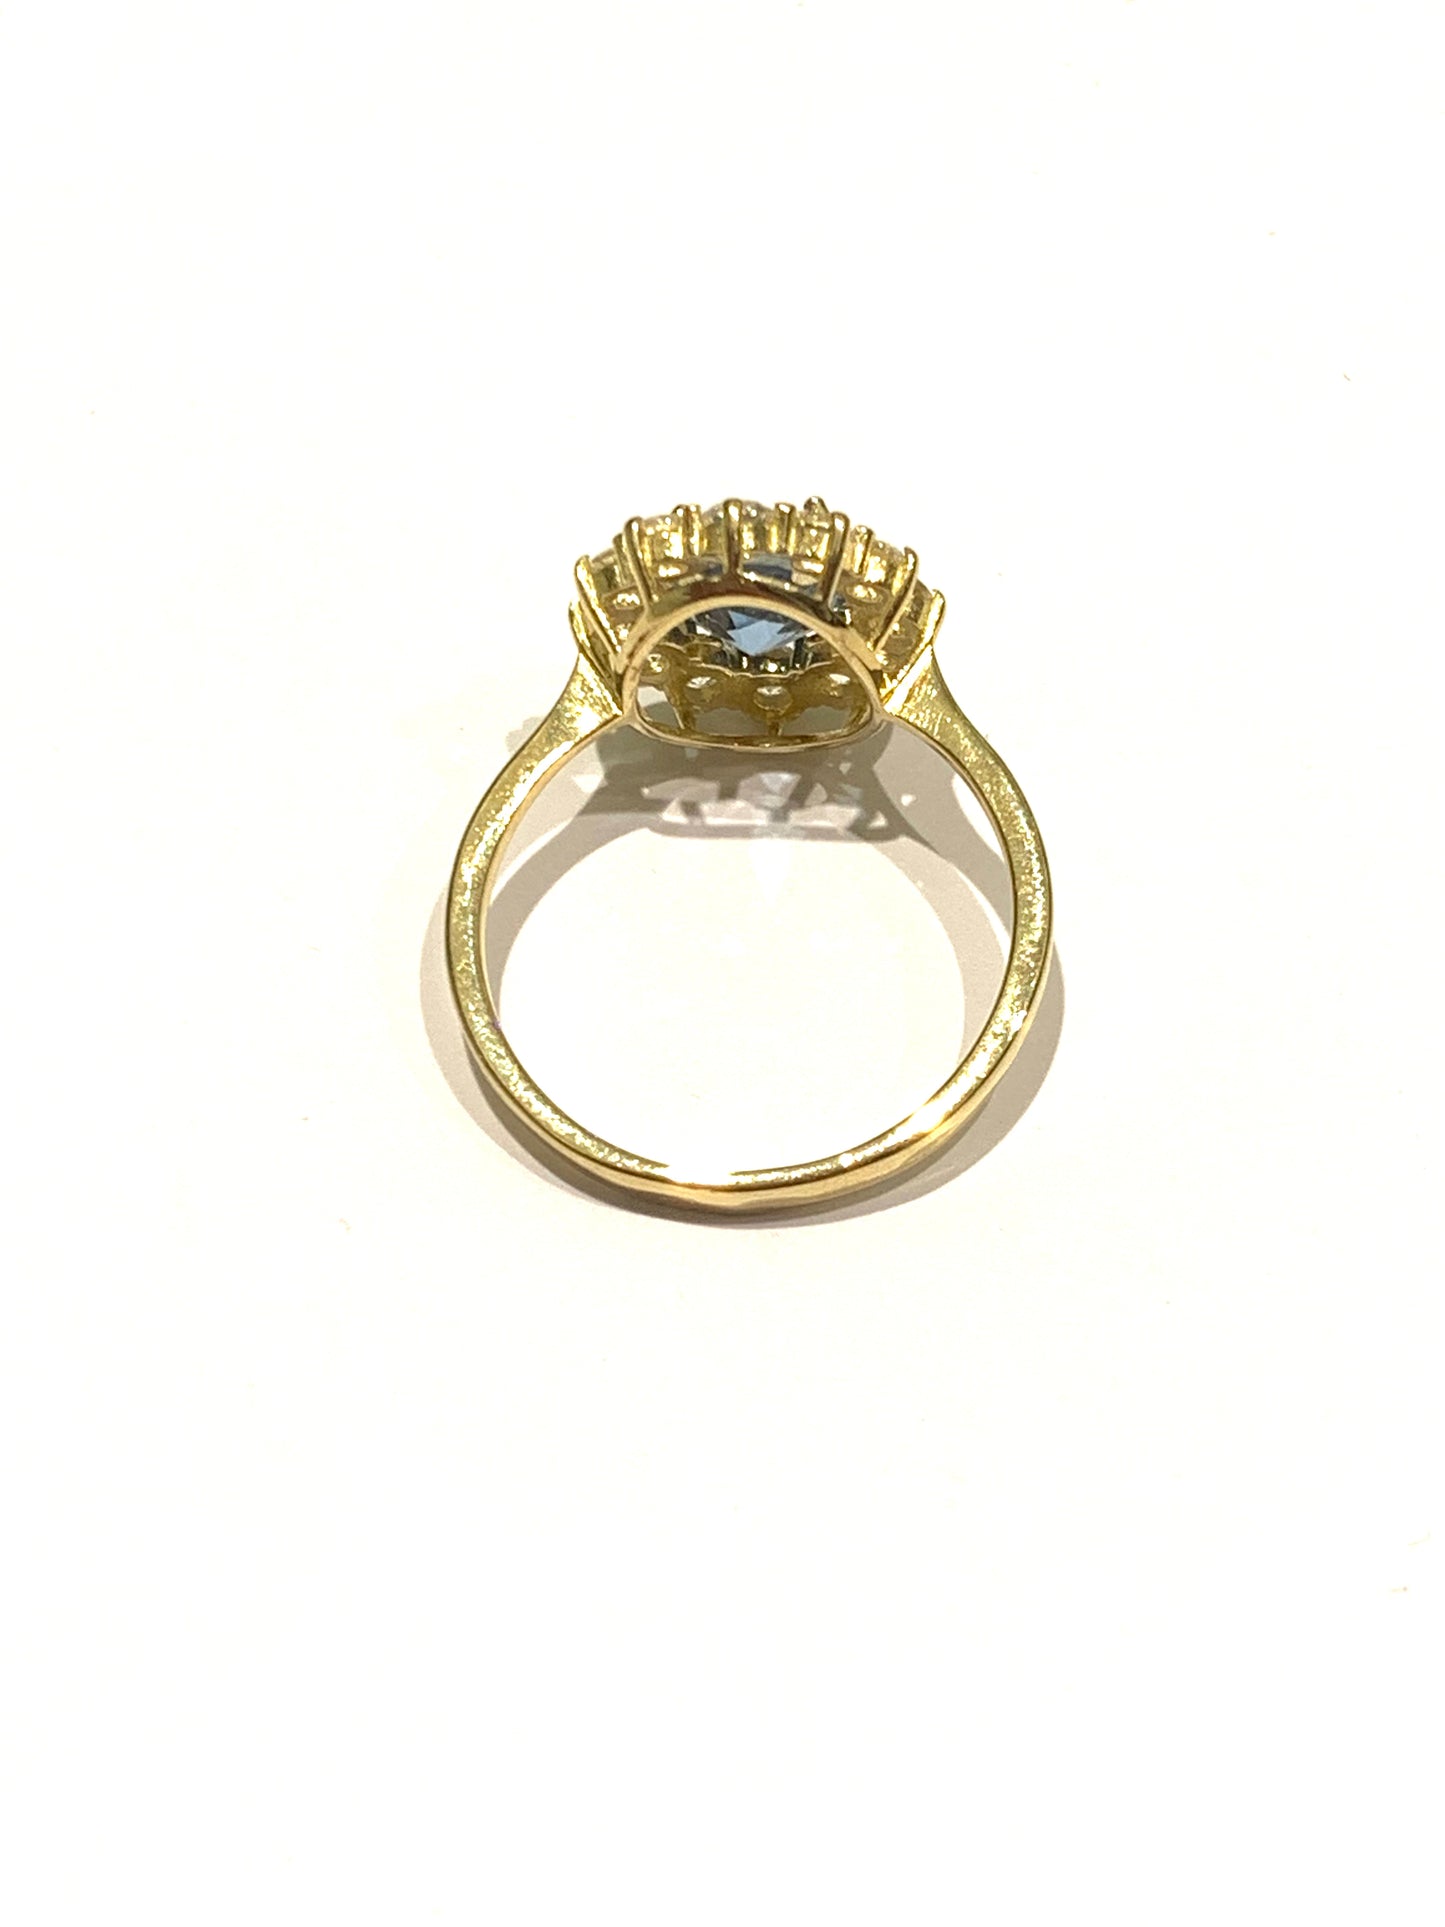 Anello in oro giallo 9kt con zircone centrale colore acquamarina circondato da zirconi bianchi.  Dimensione zircone colore acquamarina 0,6x0,9 cm.  Dimensione totale 1,2x1,5 cm.  Misura 17.